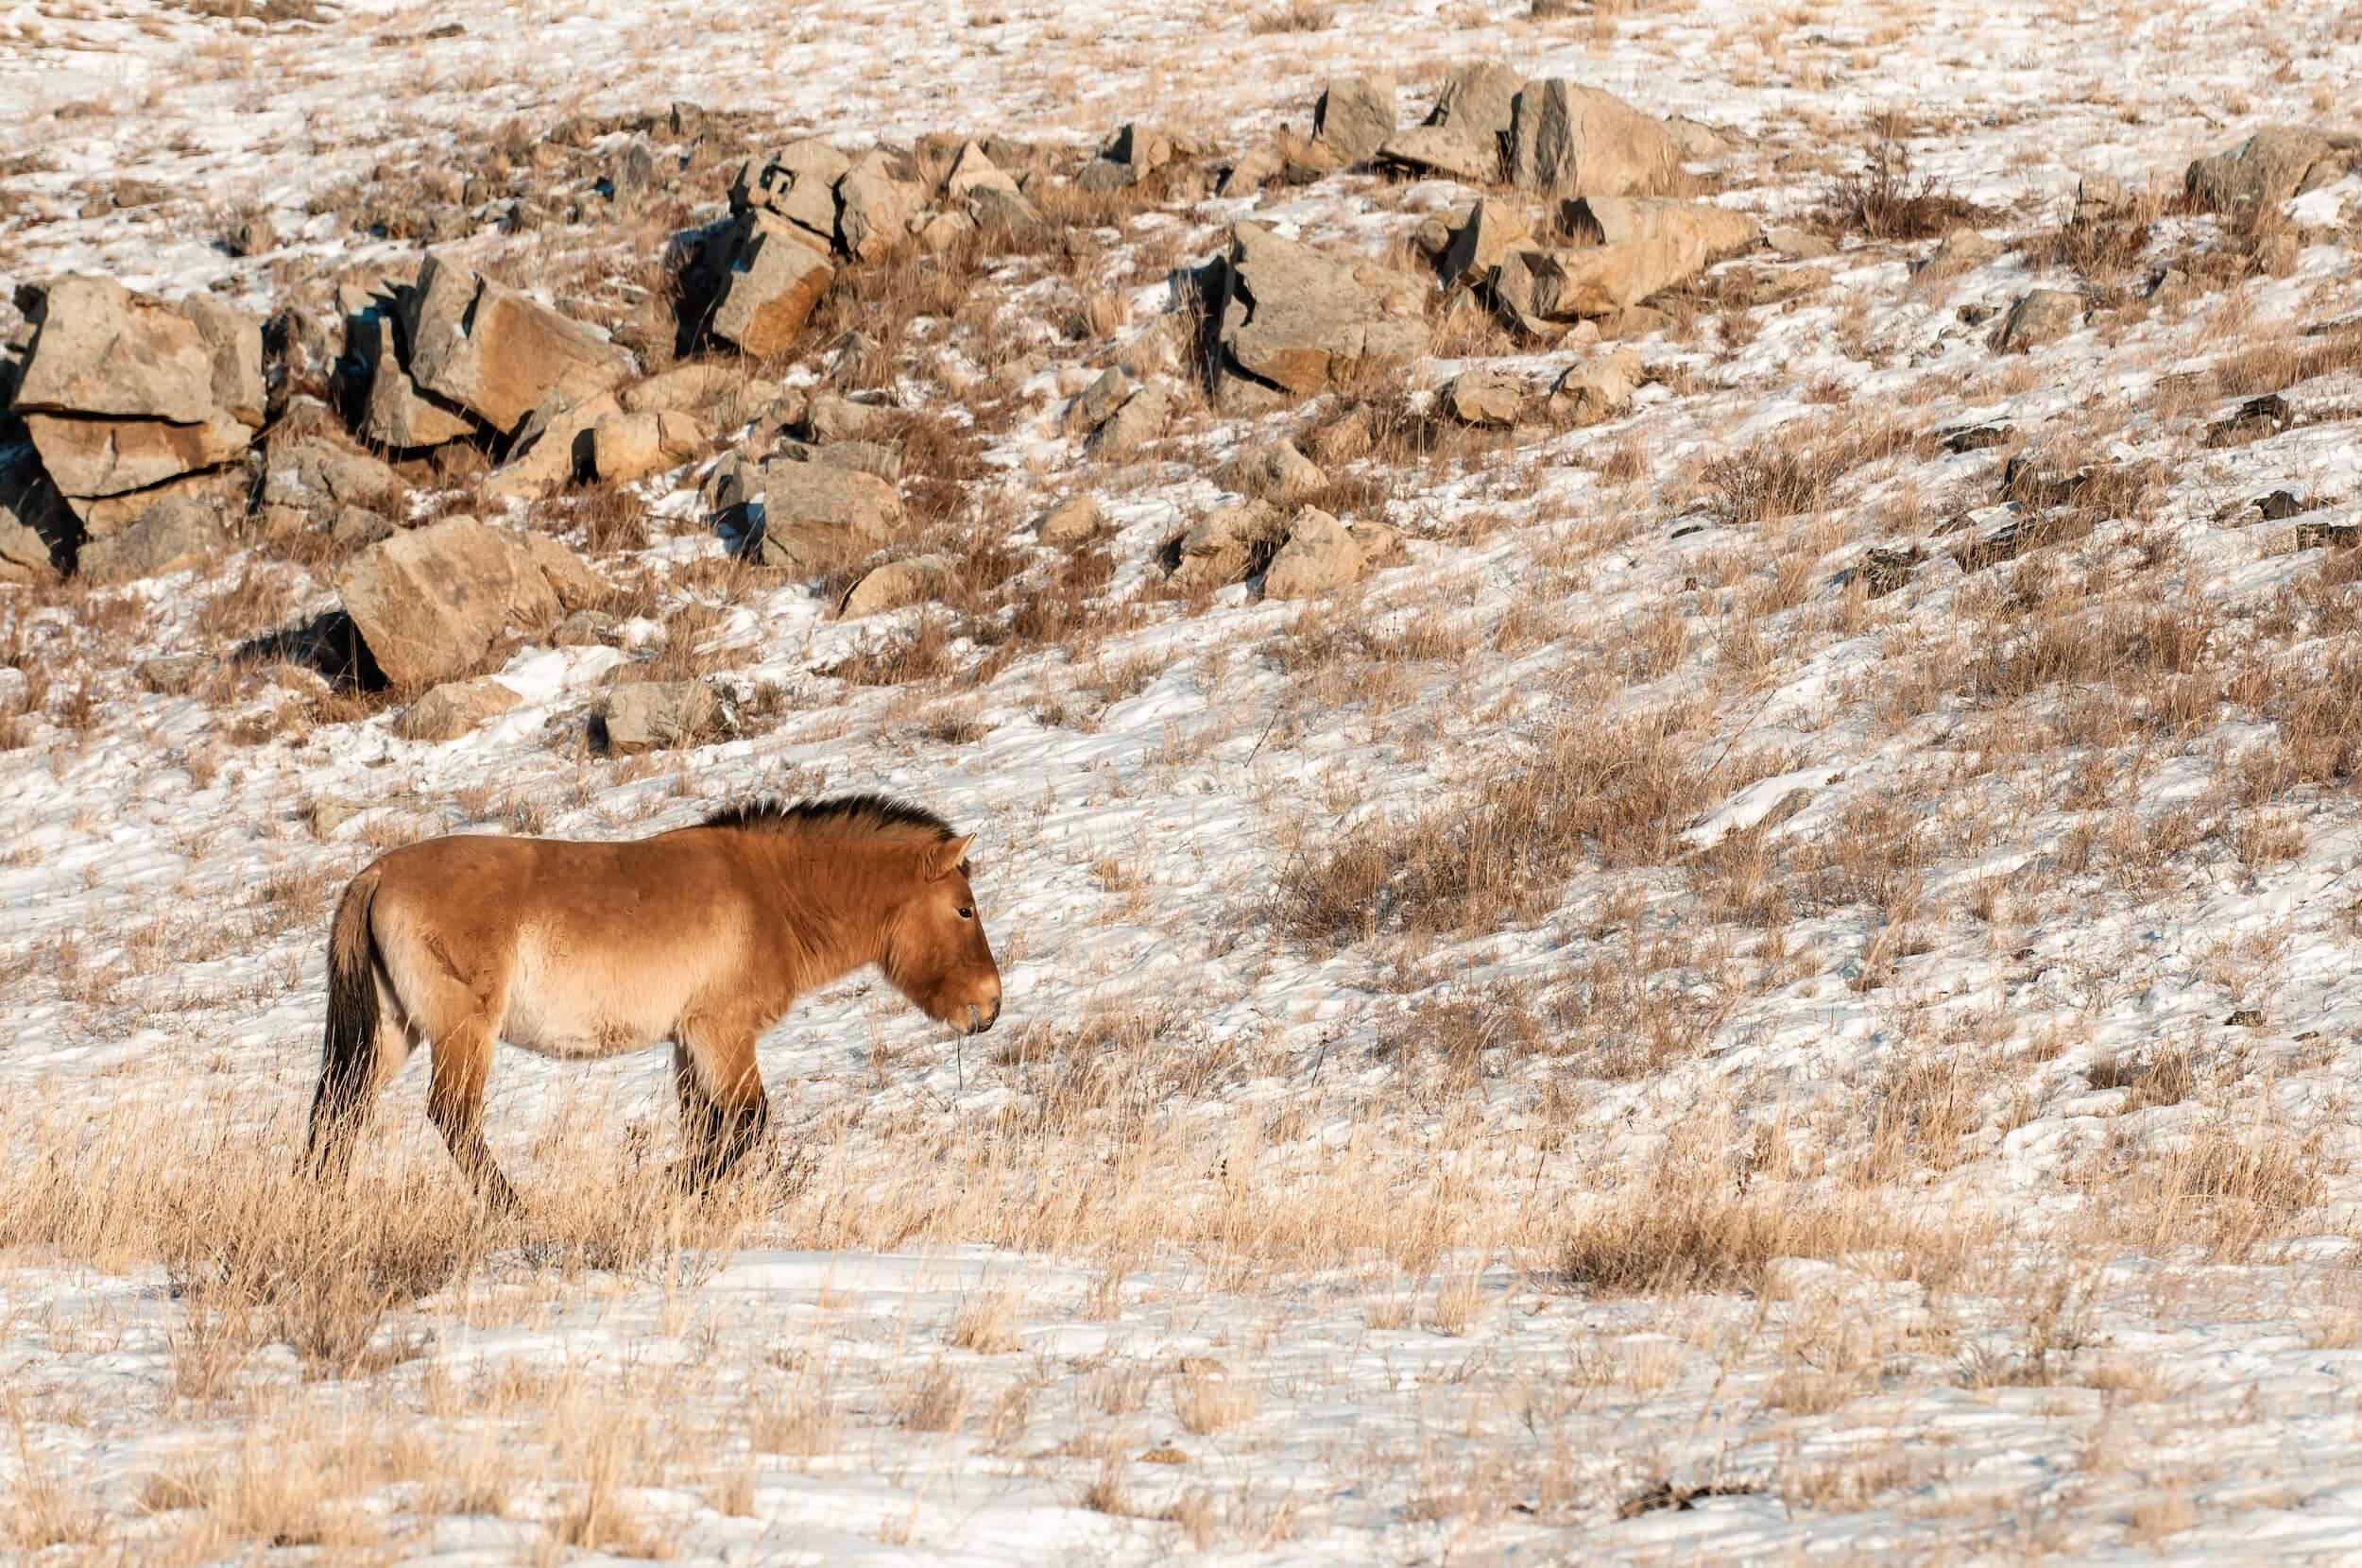 صورة لحصان برجفالسكي بالغ يقف مقابل نتوءات صخرية. المصور: أستريد هاريسون     المكان: منغوليا